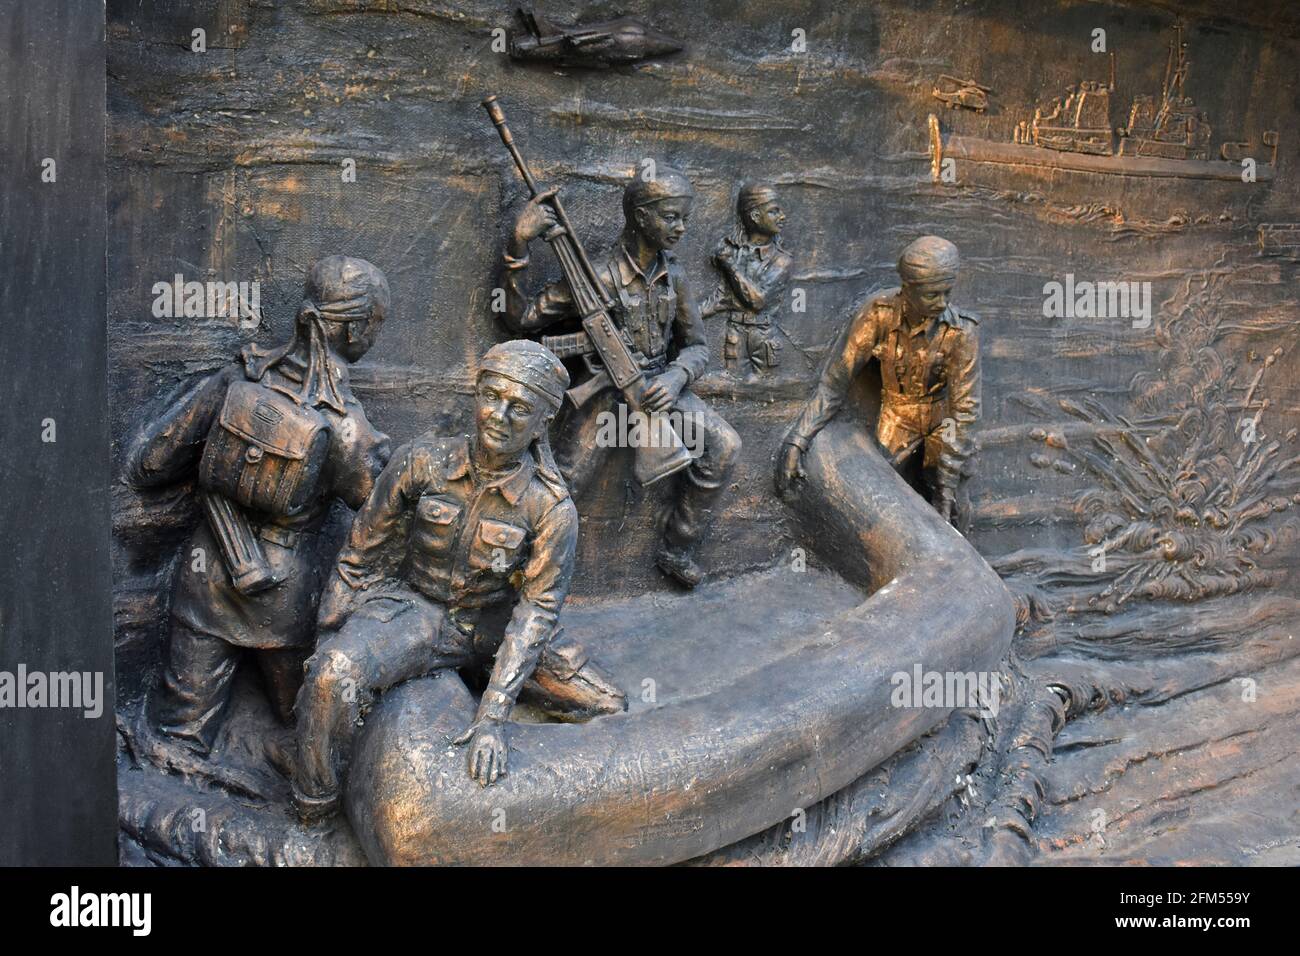 Soupir de mur de sculpture de guerre au Musée - National War Memorial Southern Command Pune, Maharashtra, Inde Banque D'Images